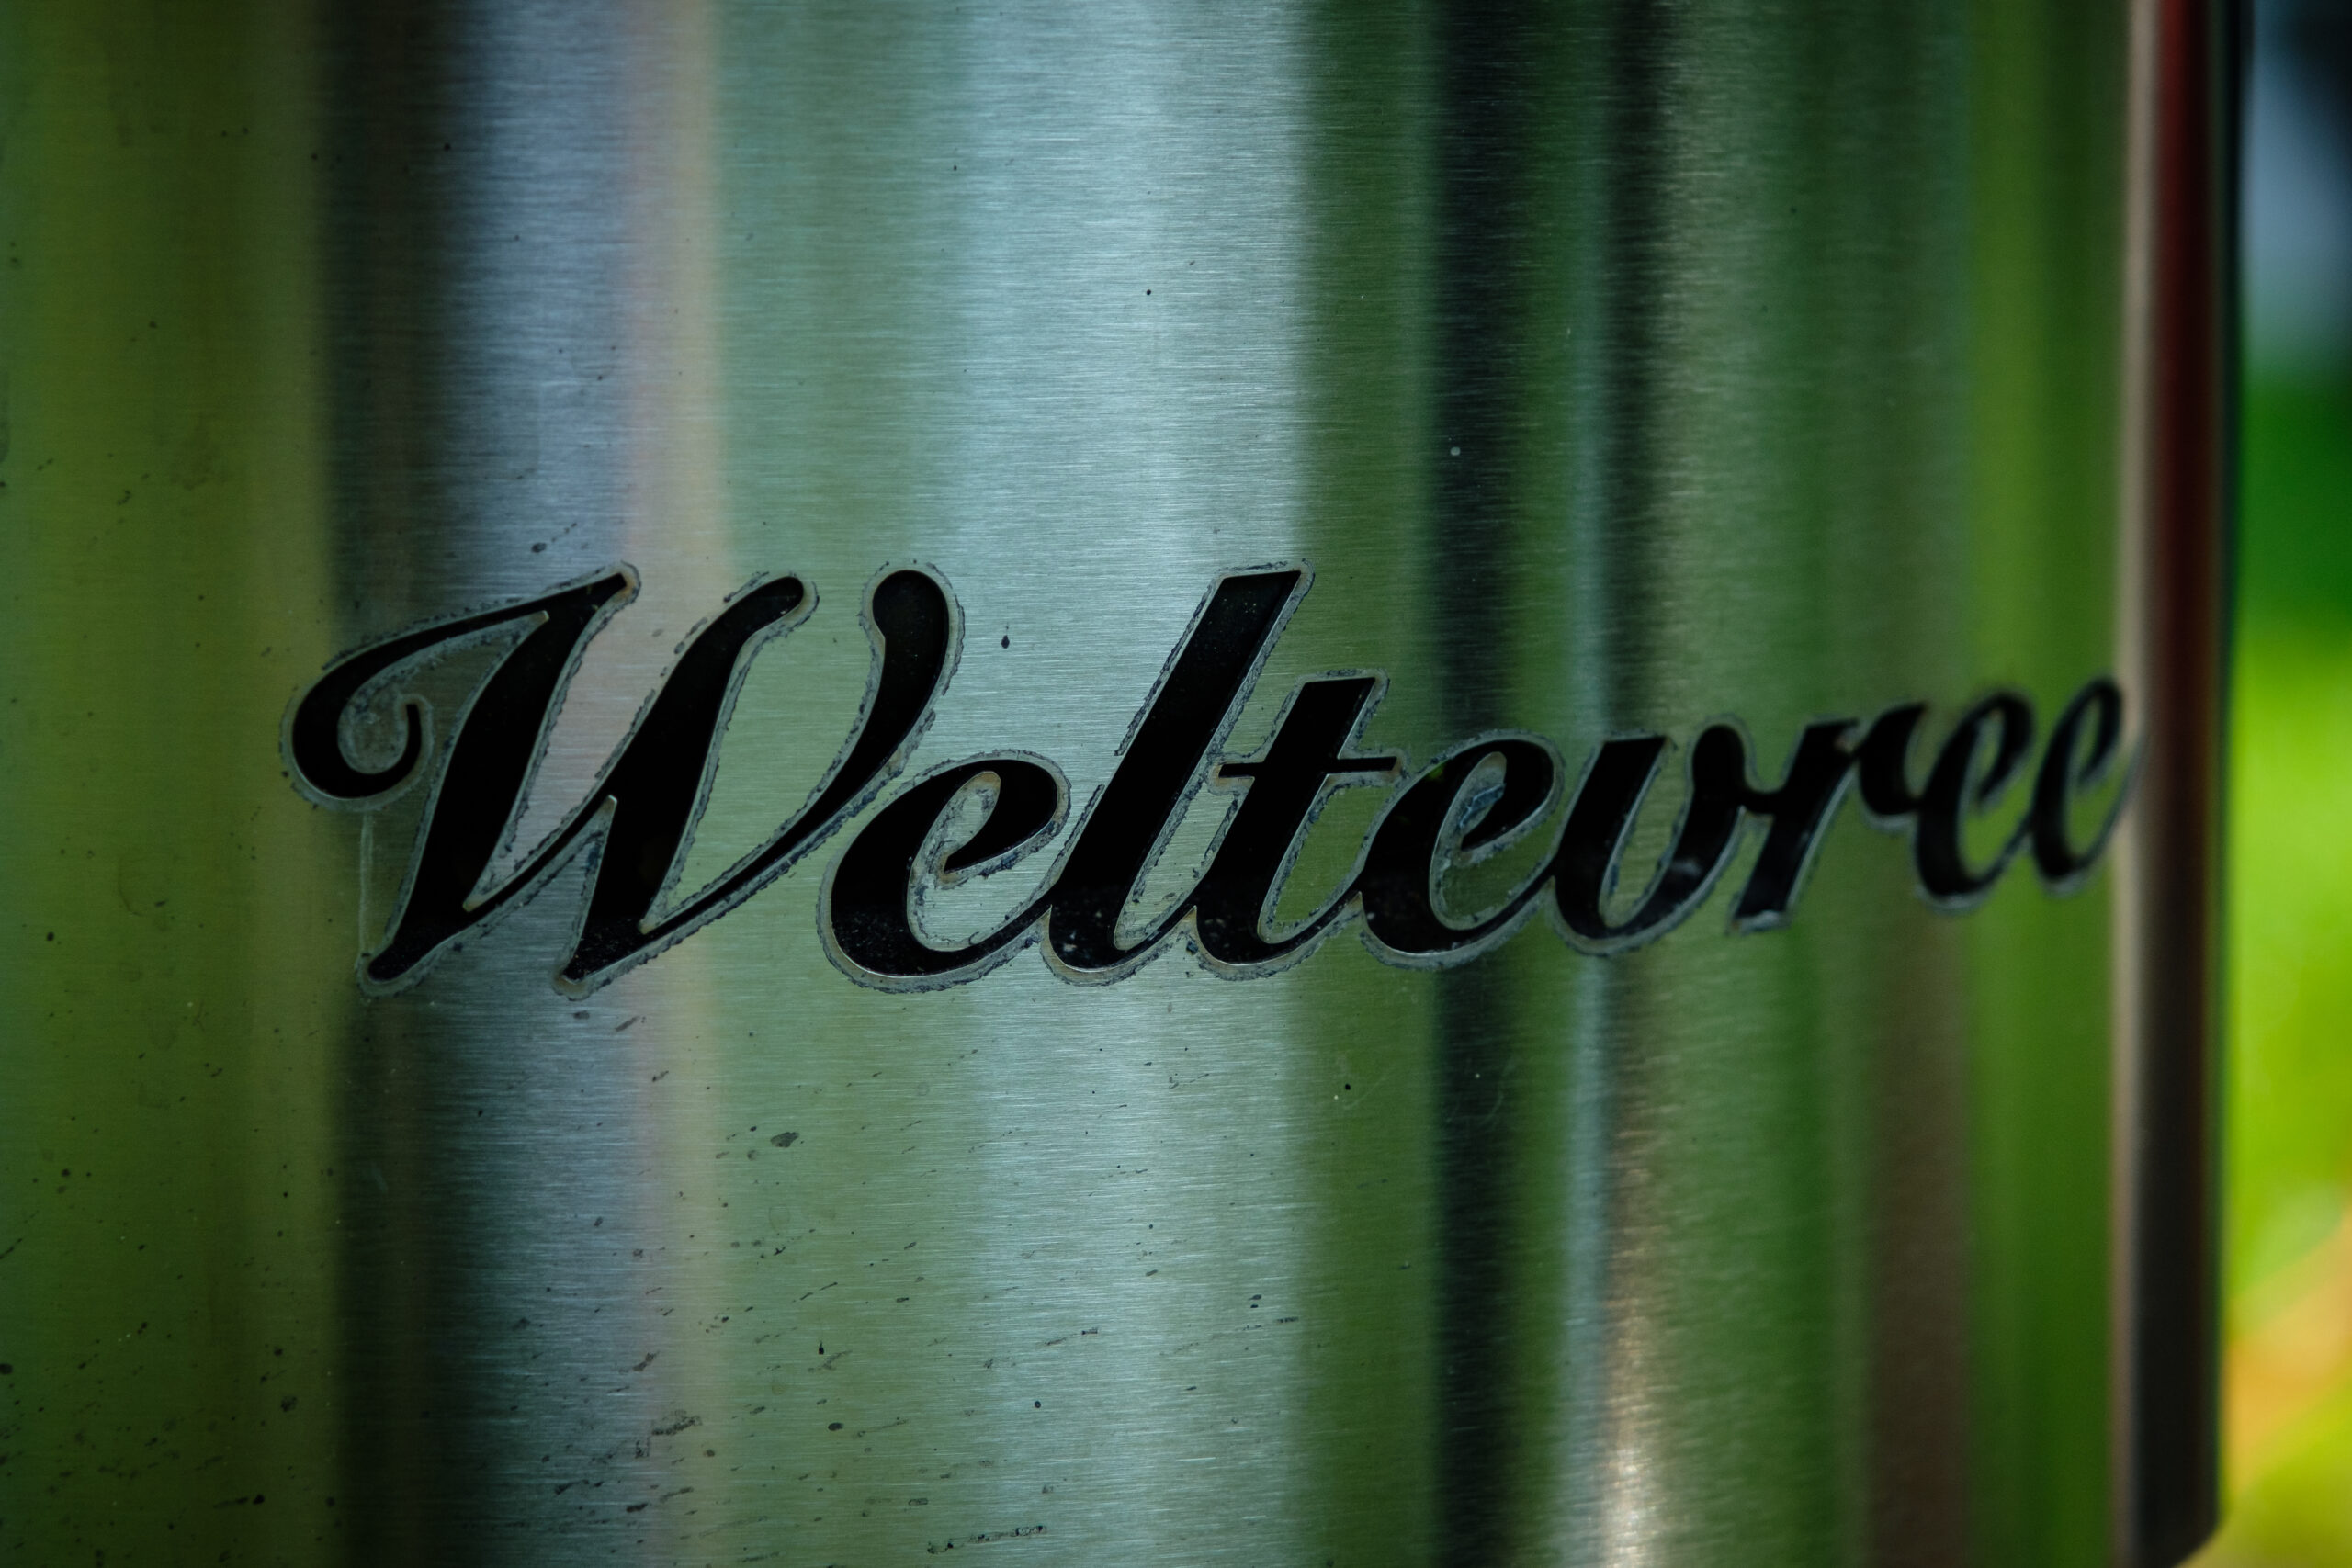 Weltevree-dutchtub-windshield-logo